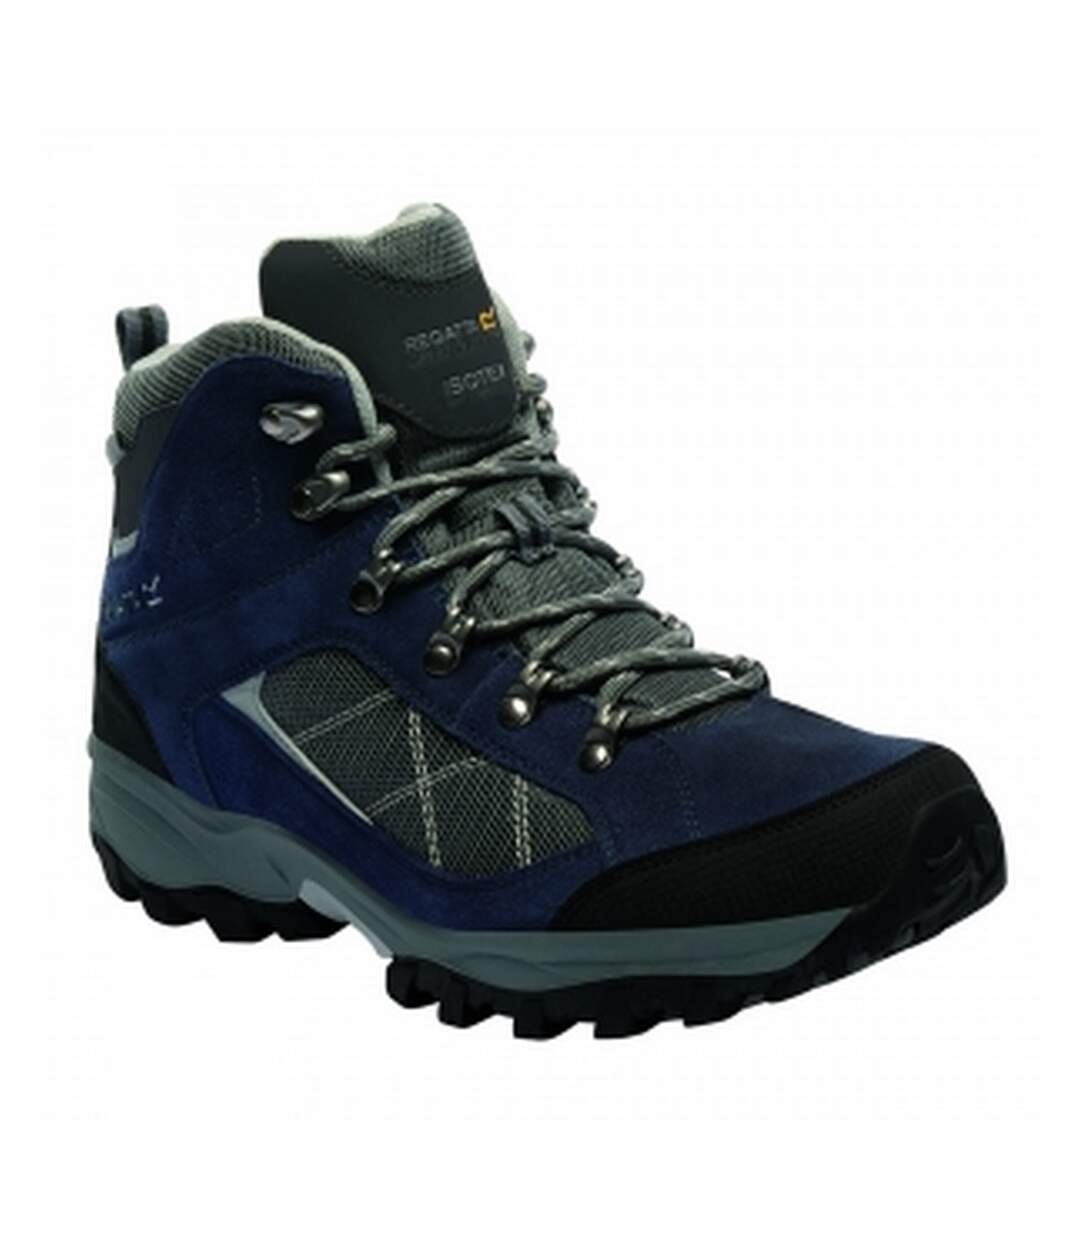 Regatta - Chaussures de randonnée KOTA - Homme (Bleu marine) - UTRG2839